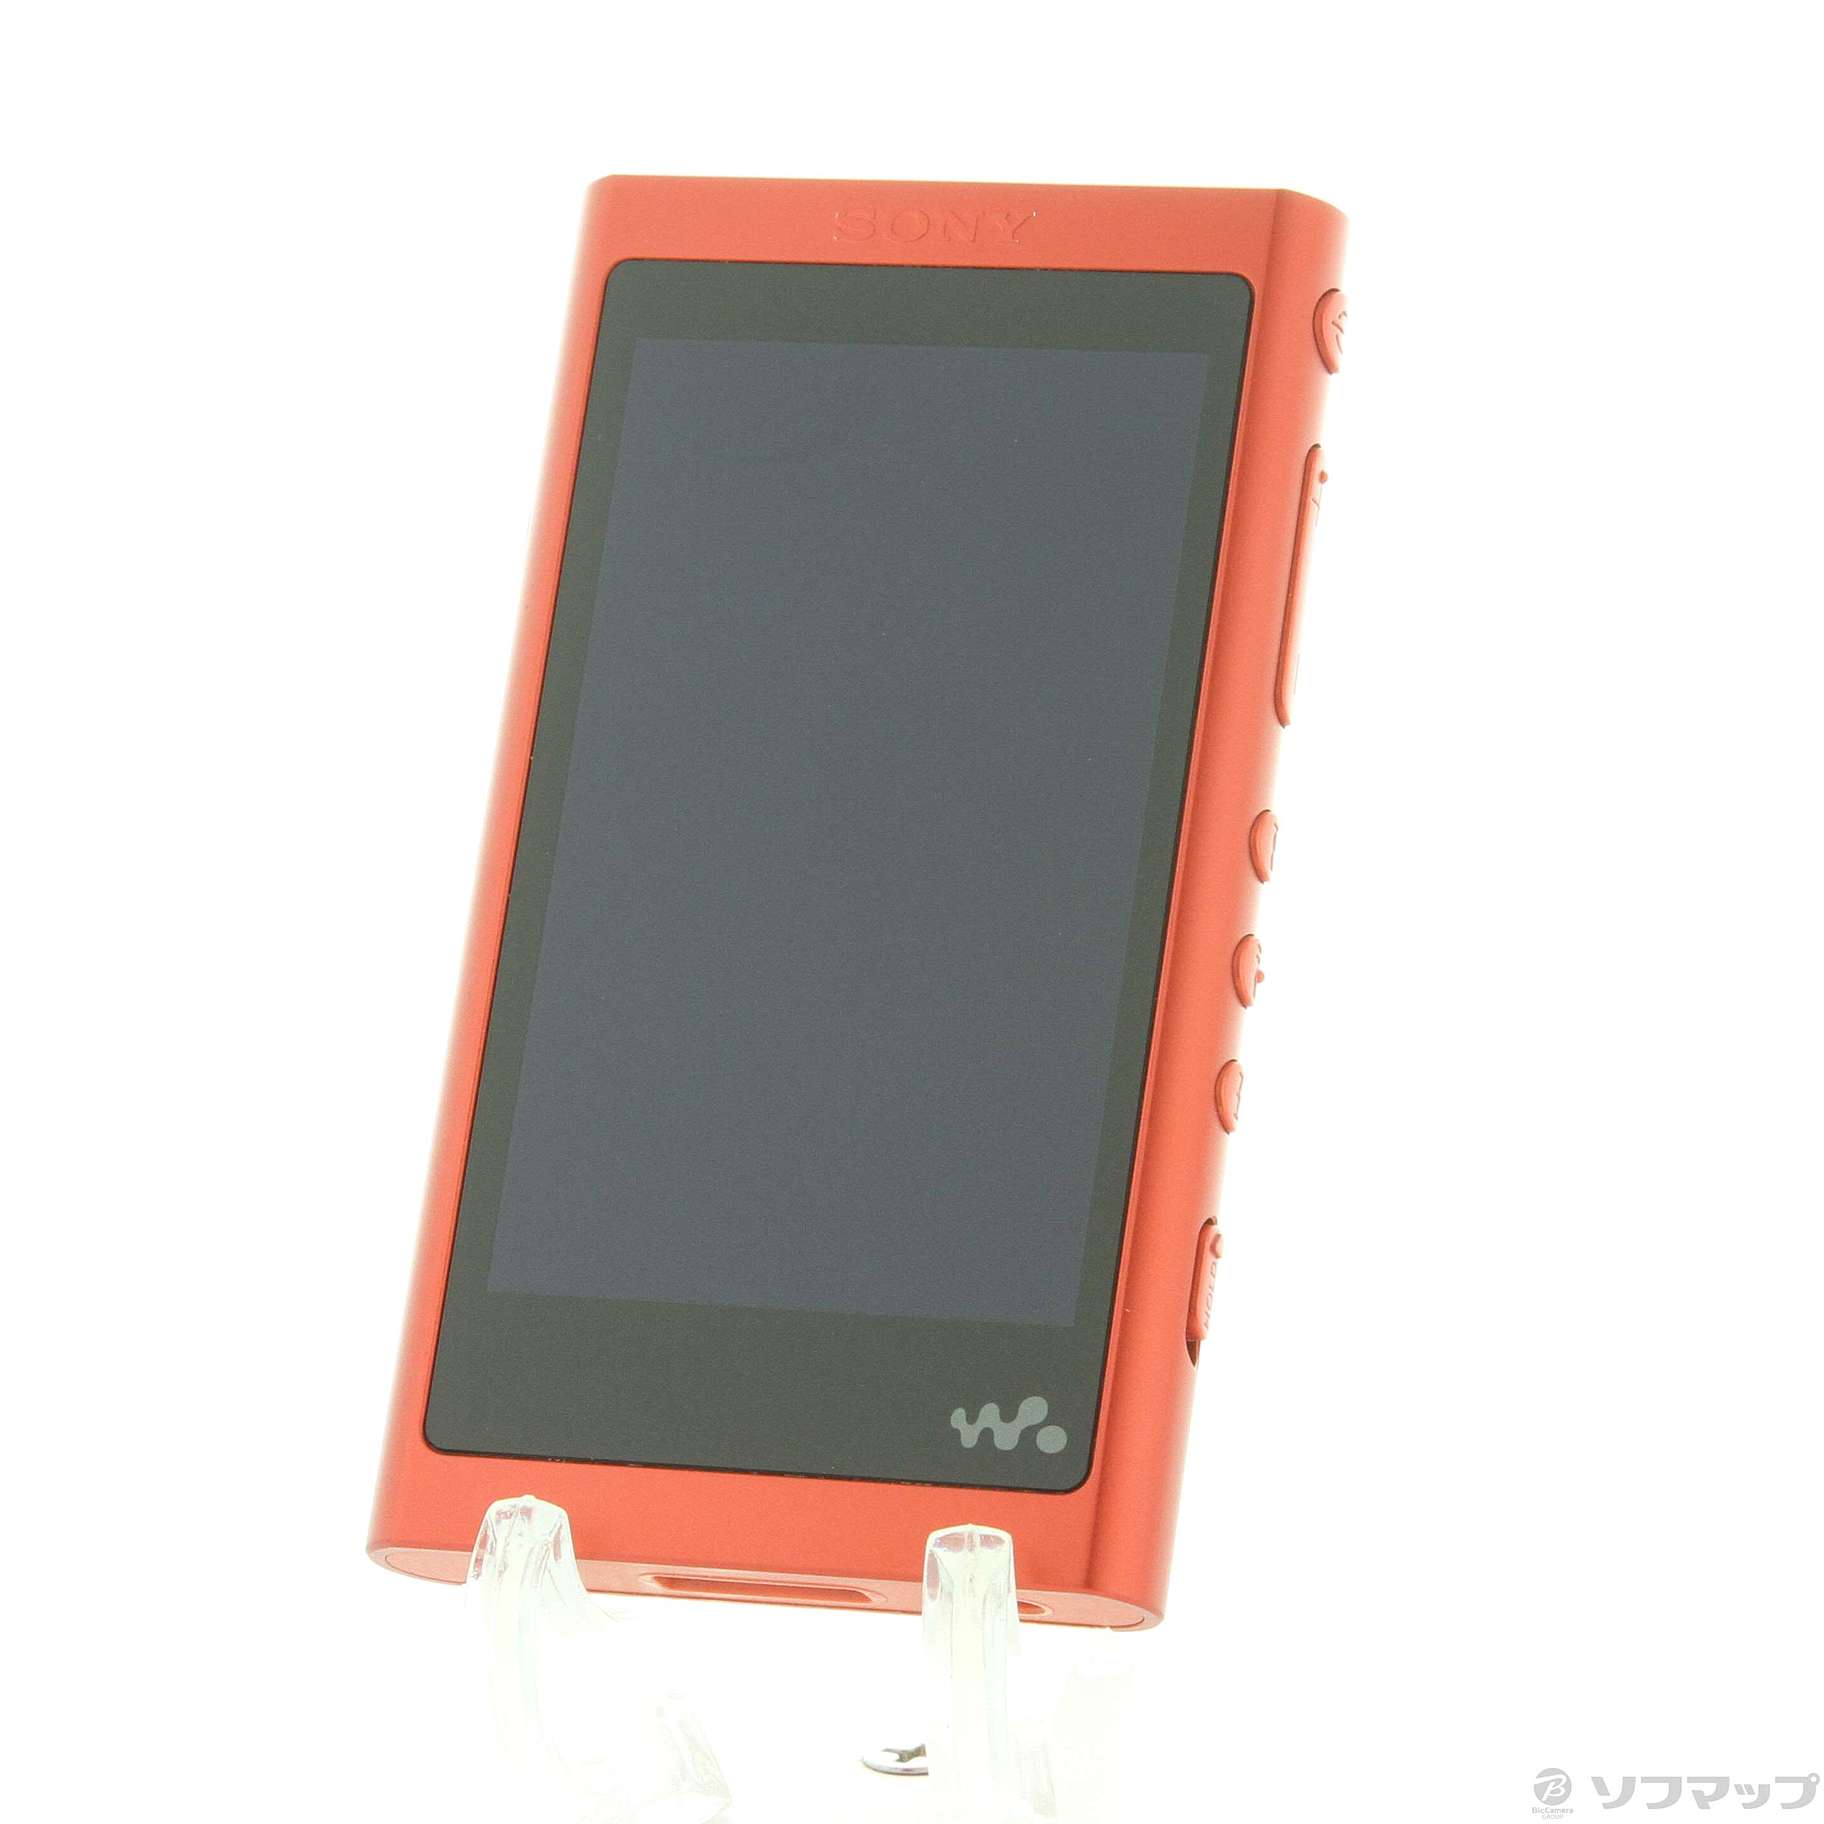 SONY ウォークマン A50シリーズ NW-A55 16GB トワイライトレッド 